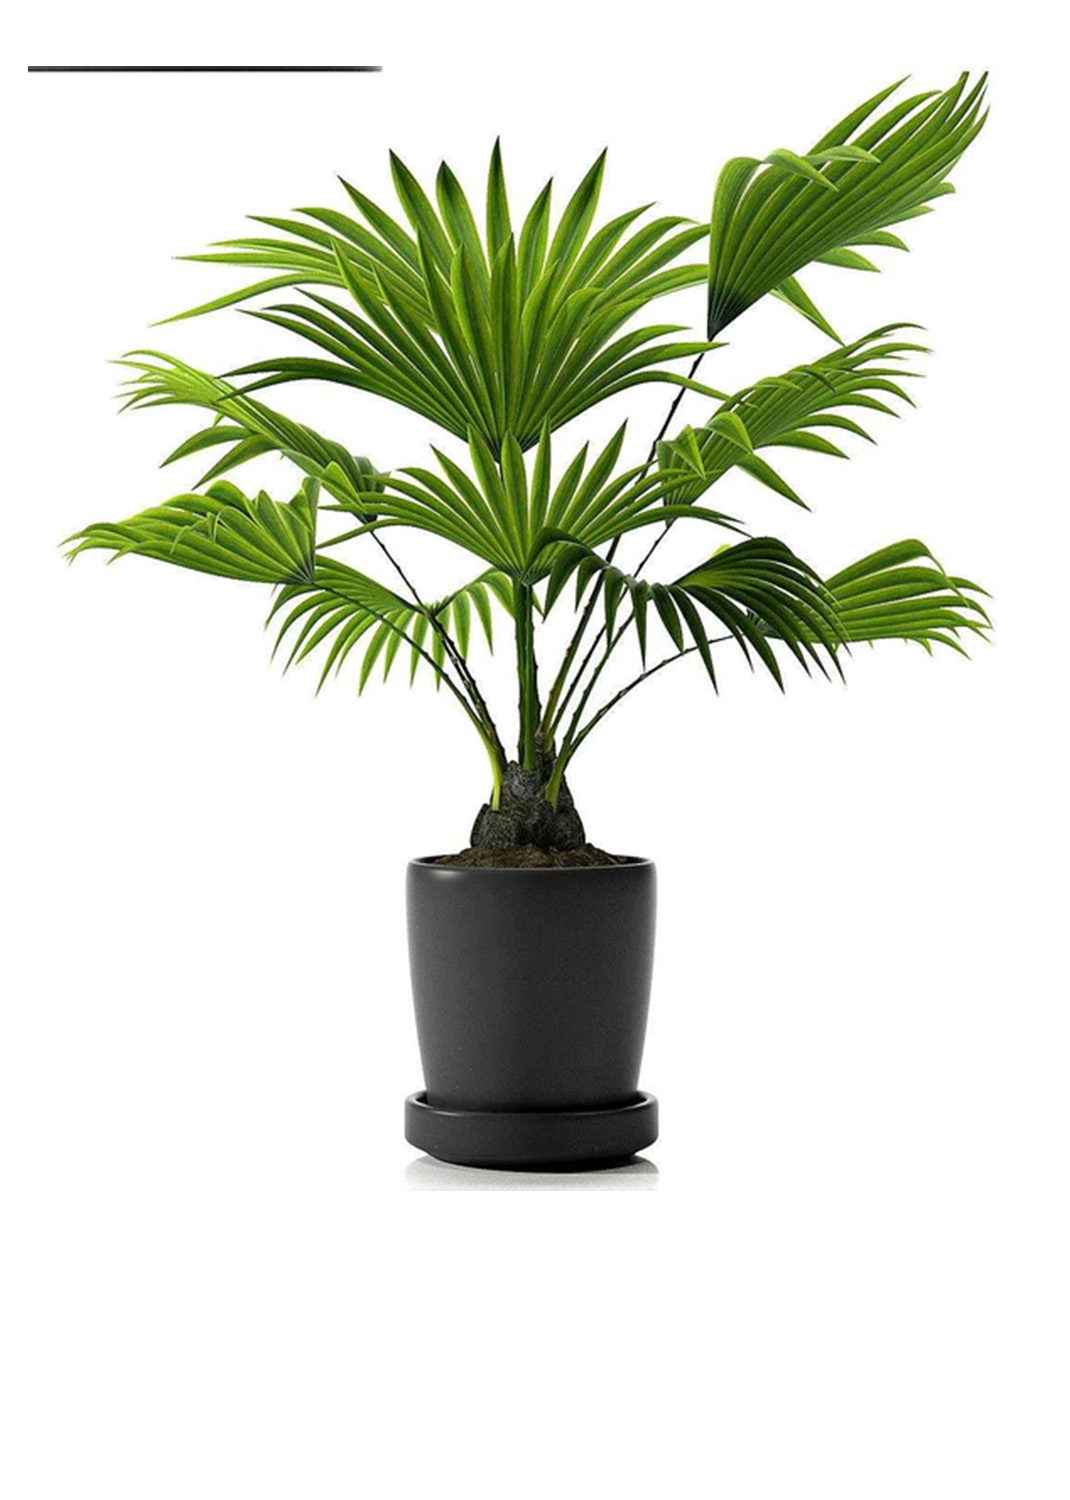 Chinese Fan Palm, Livistona Chinensis, Fountain Palm 1m